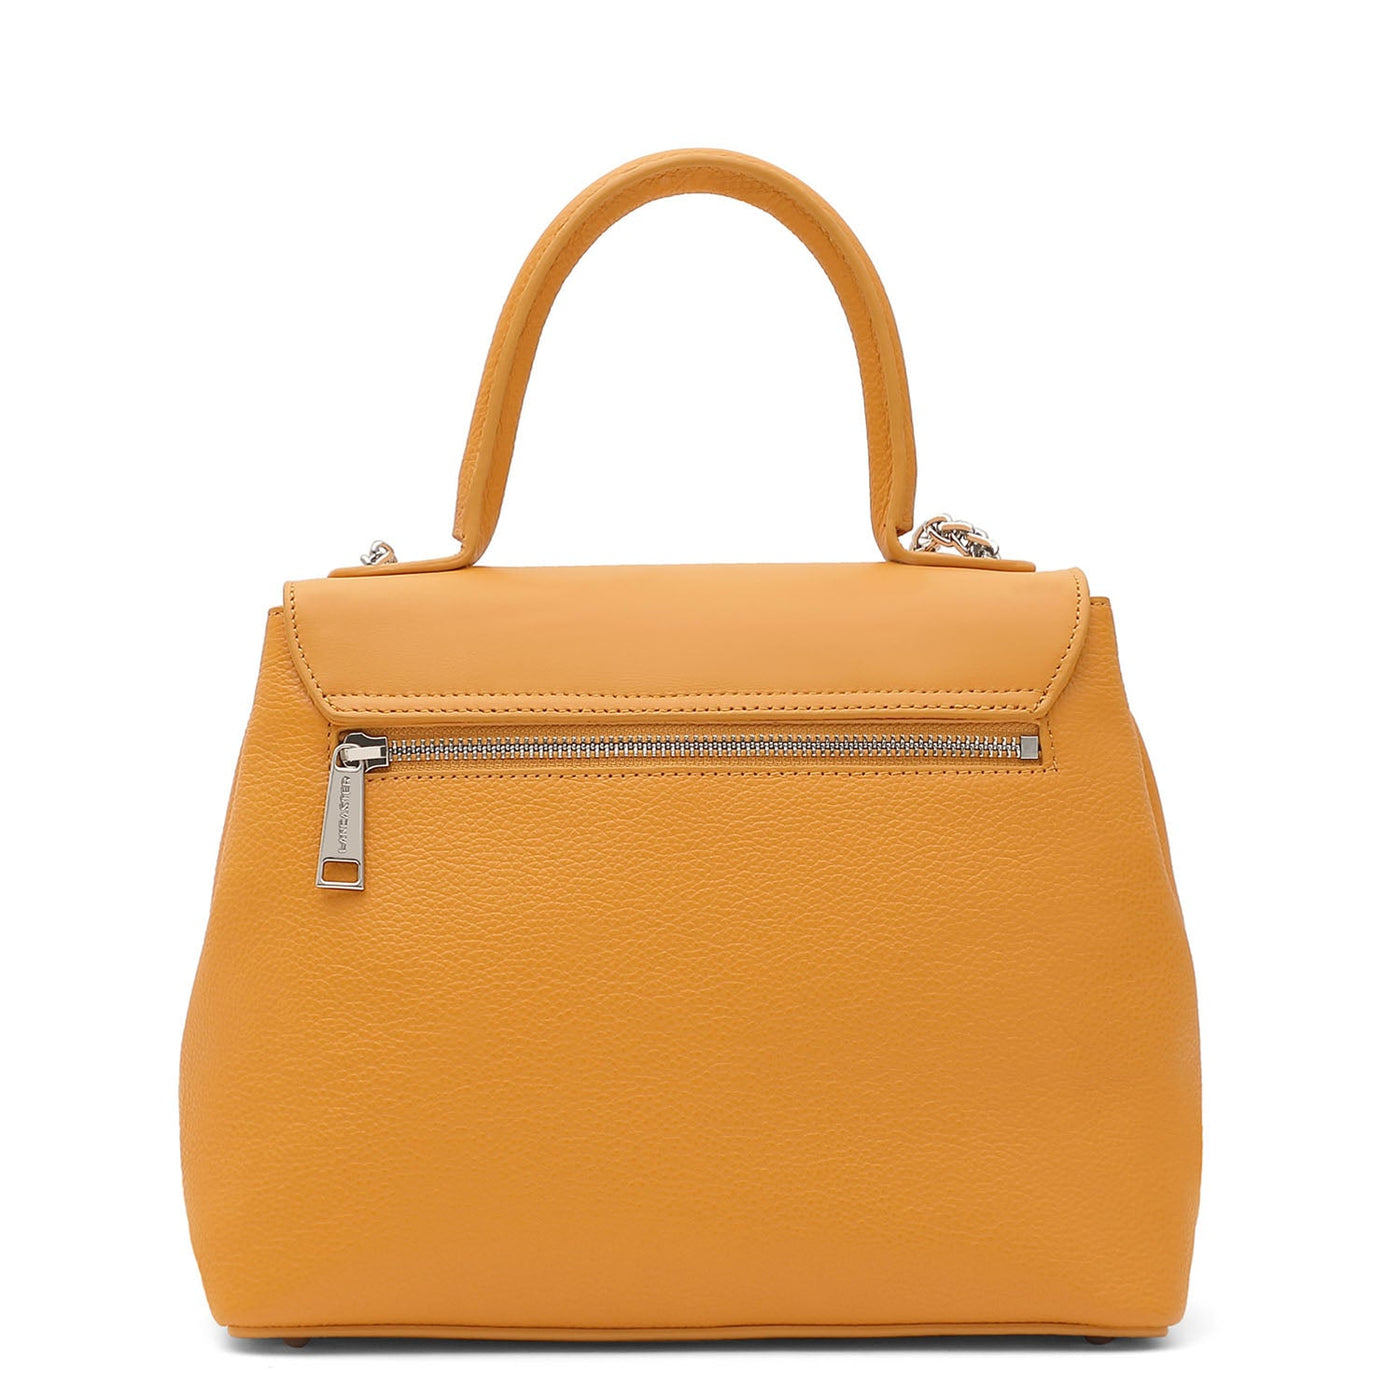 m handbag - pia #couleur_safran